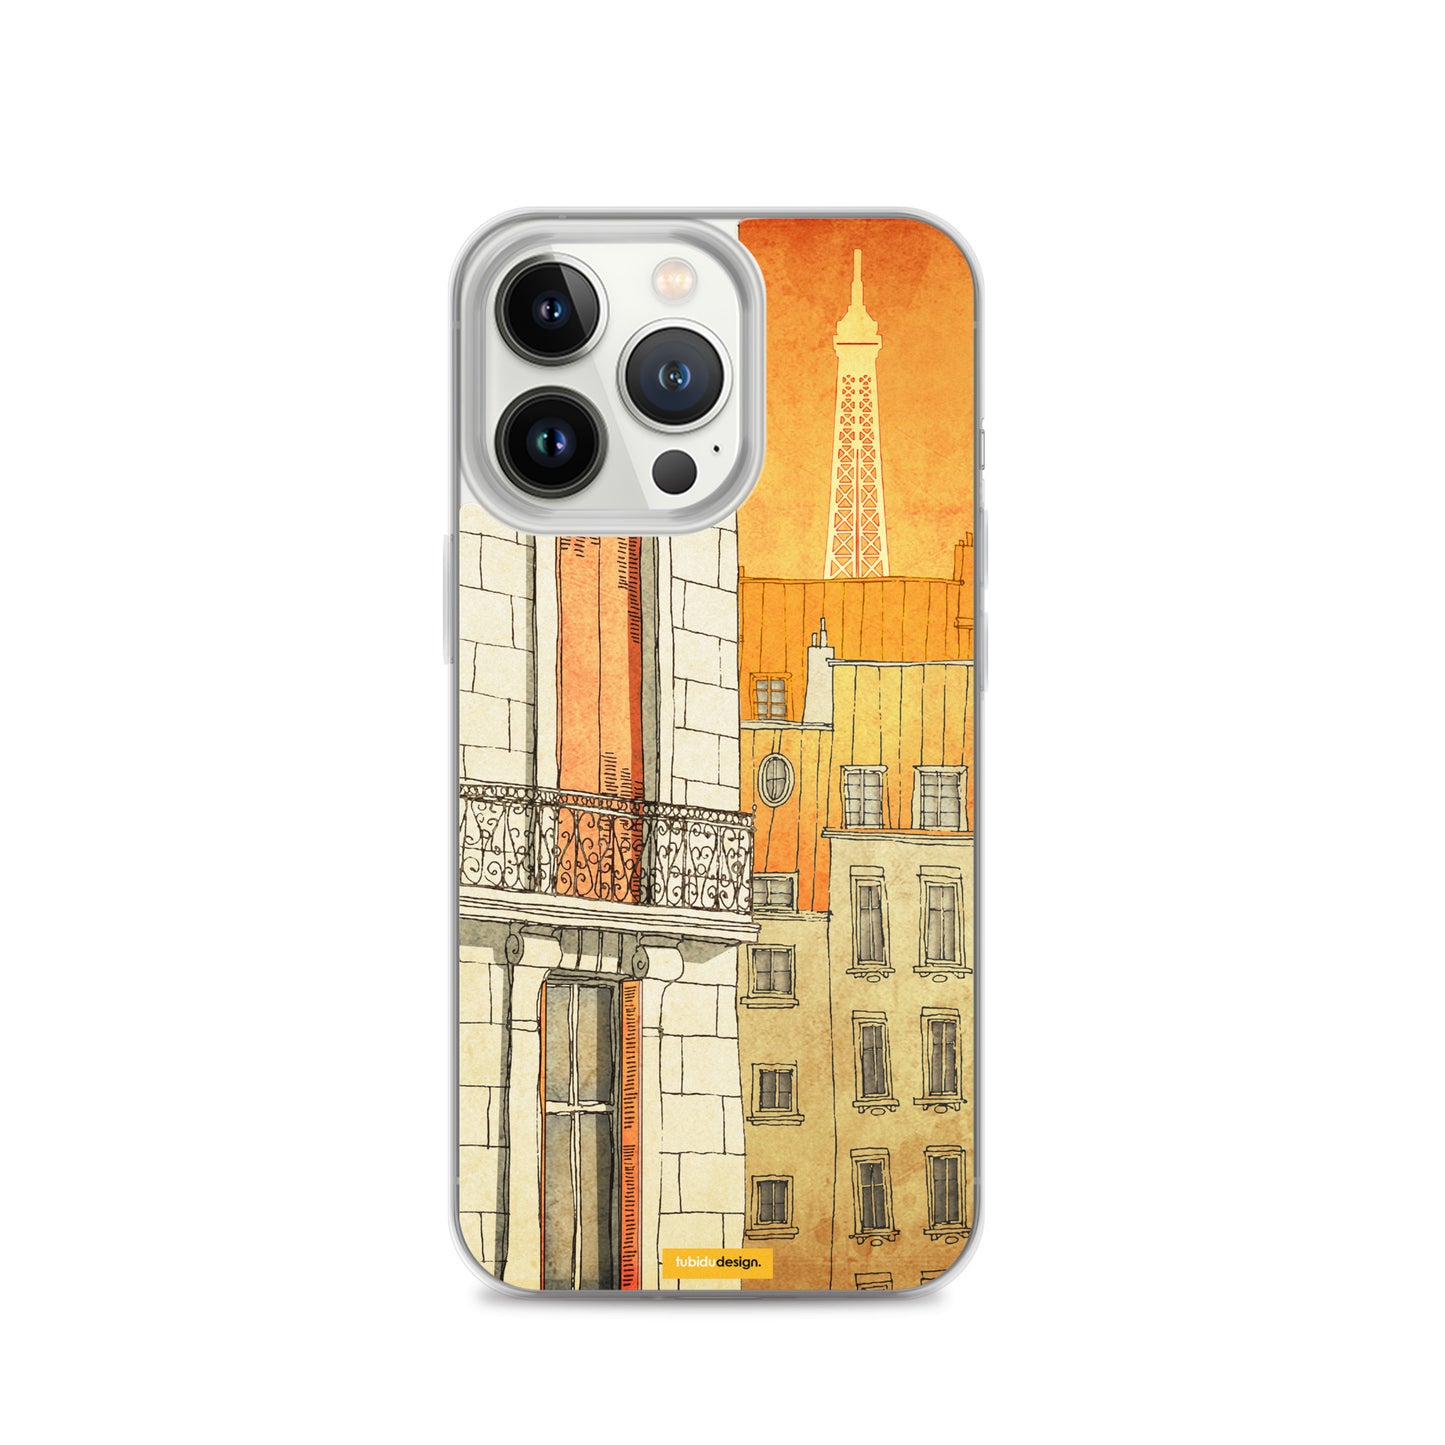 Paris windows - Illustrated iPhone Case